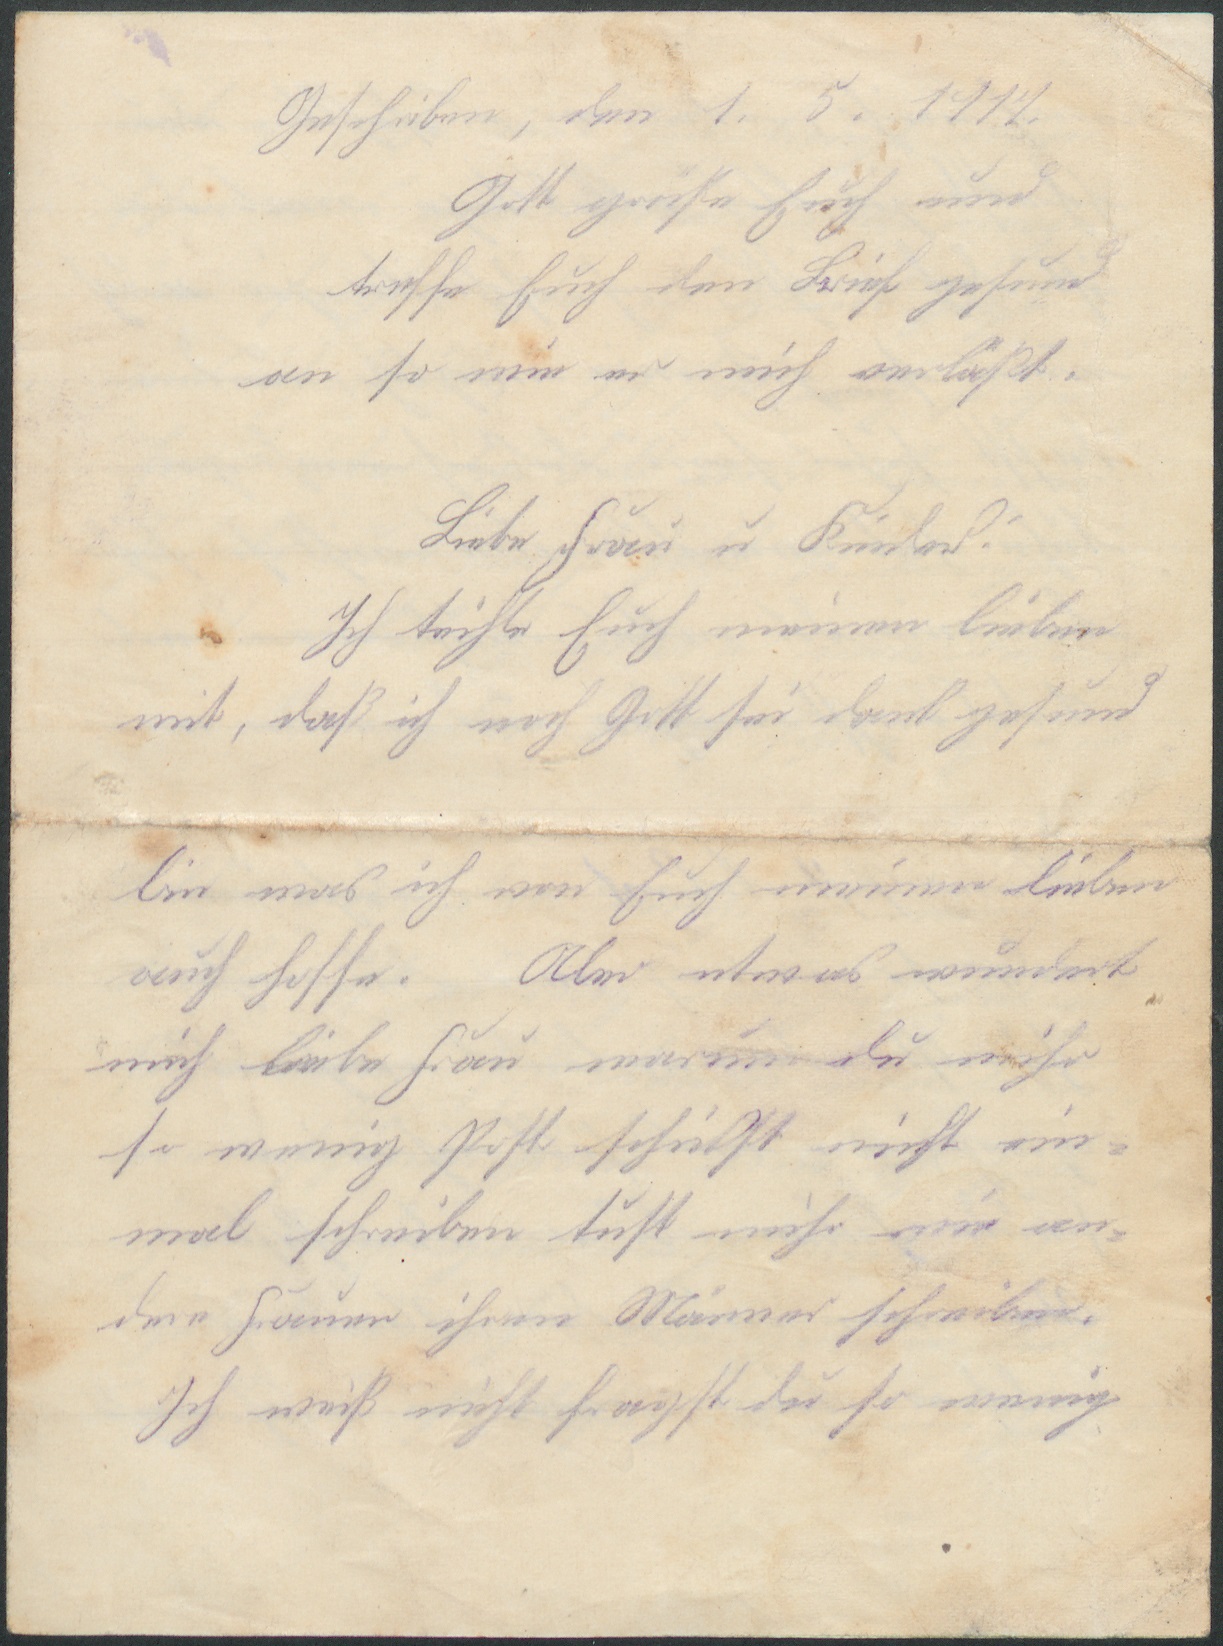  La dernière lettre du soldat Emil Burger du 1er mai 1917 (Quelle: Landesarchiv BW; StAF B 20.2, Nr. 1024)